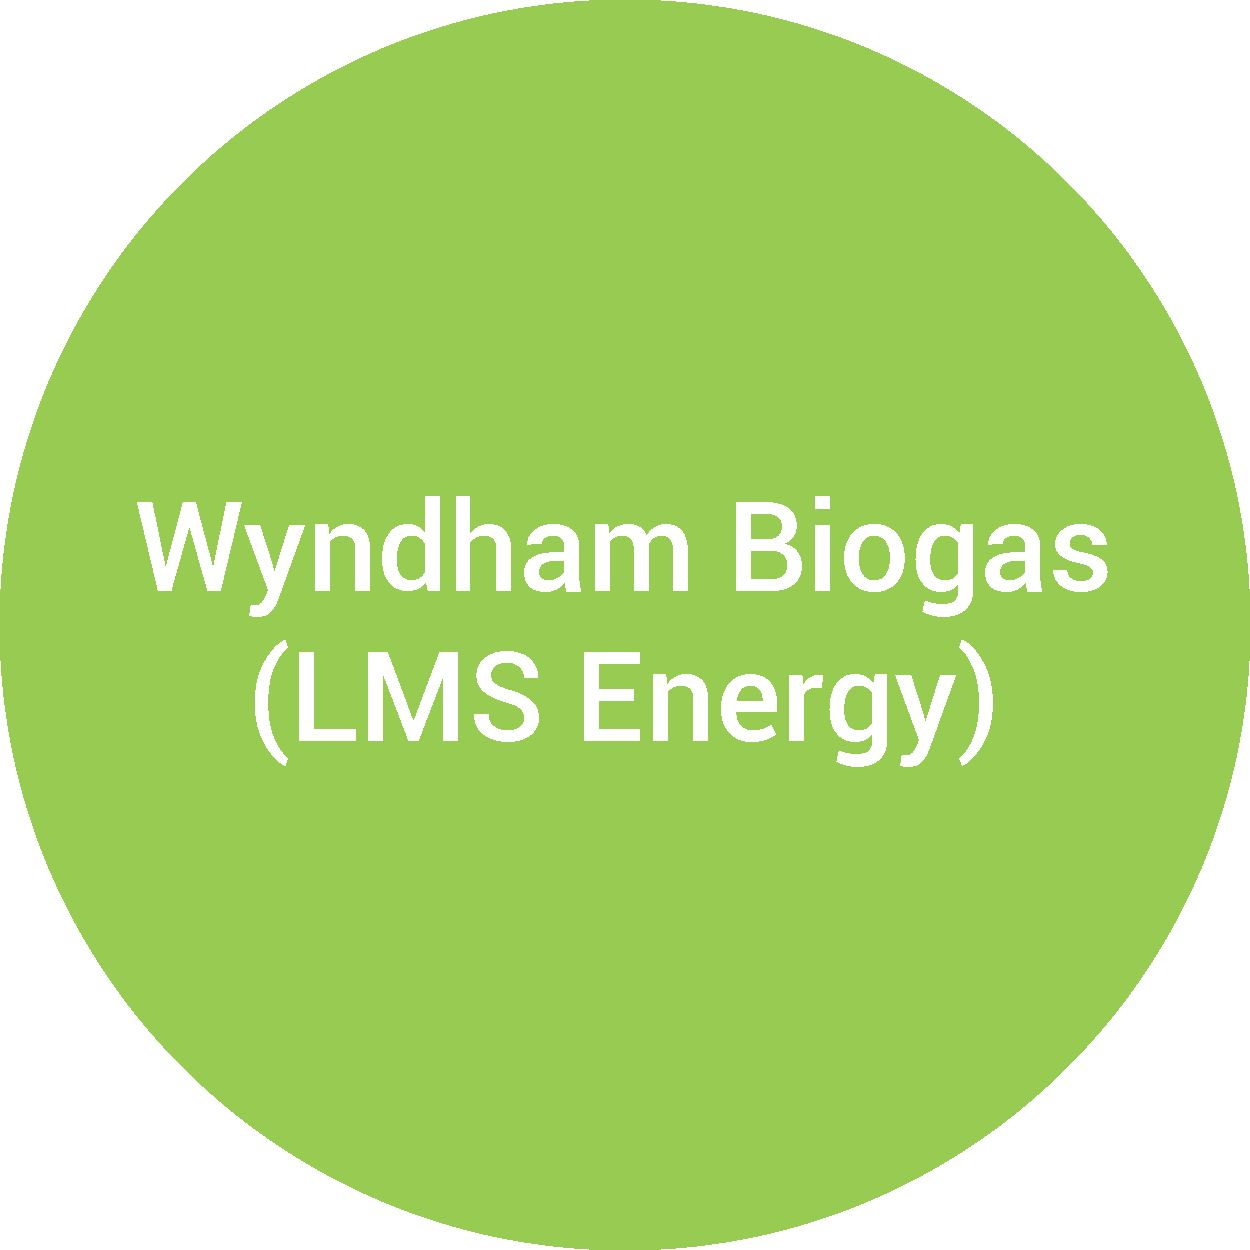 Wyndham Biogas (LMS Energy)